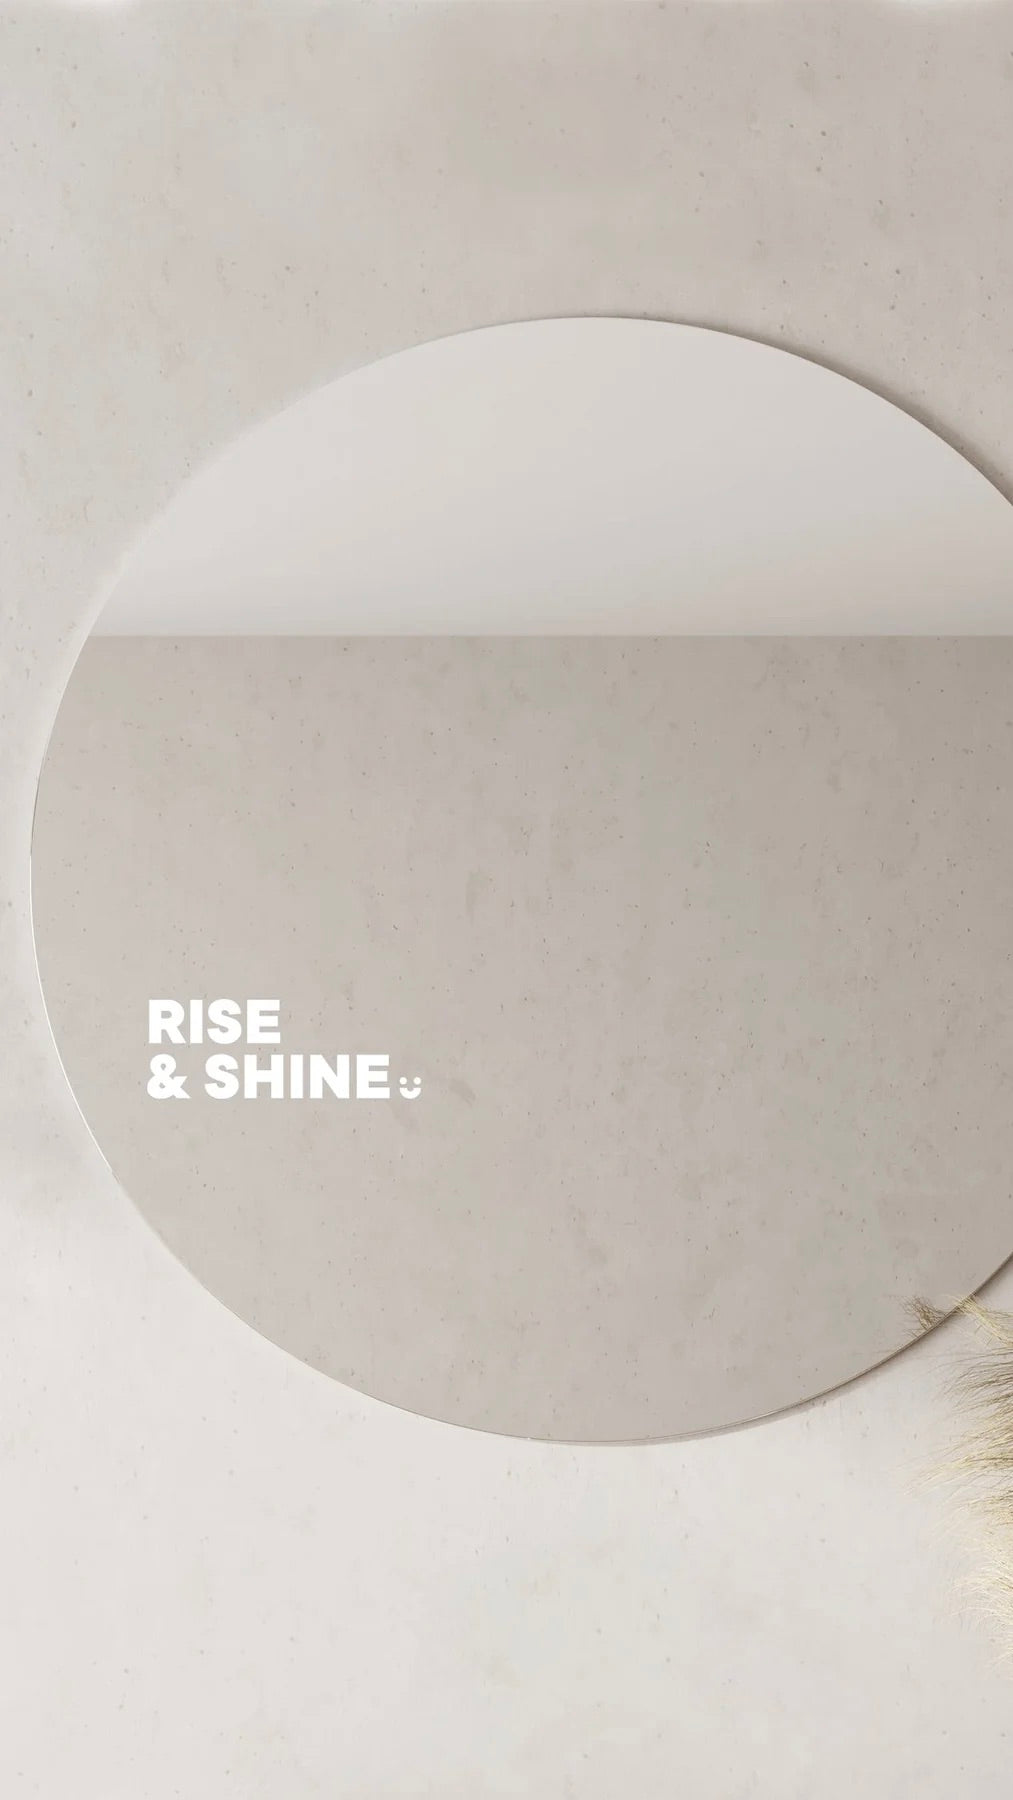 Rise & Shine - Affirmation Mirror Sticker